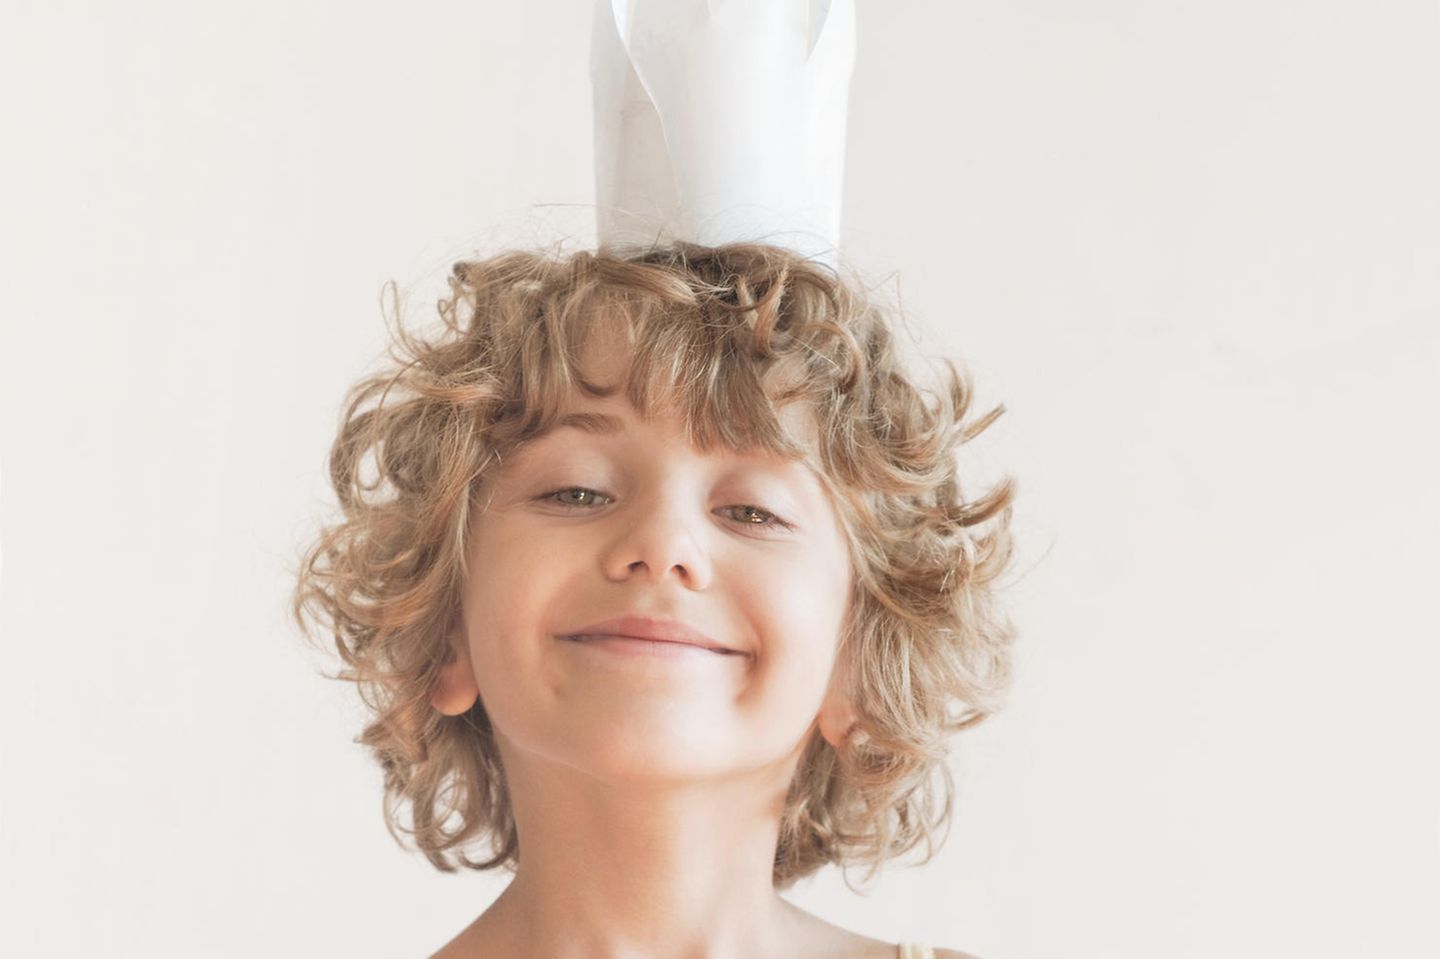 Kinder zu viel loben: Ein kleiner gelockter Junge mit Papierkrone auf dem Kopf